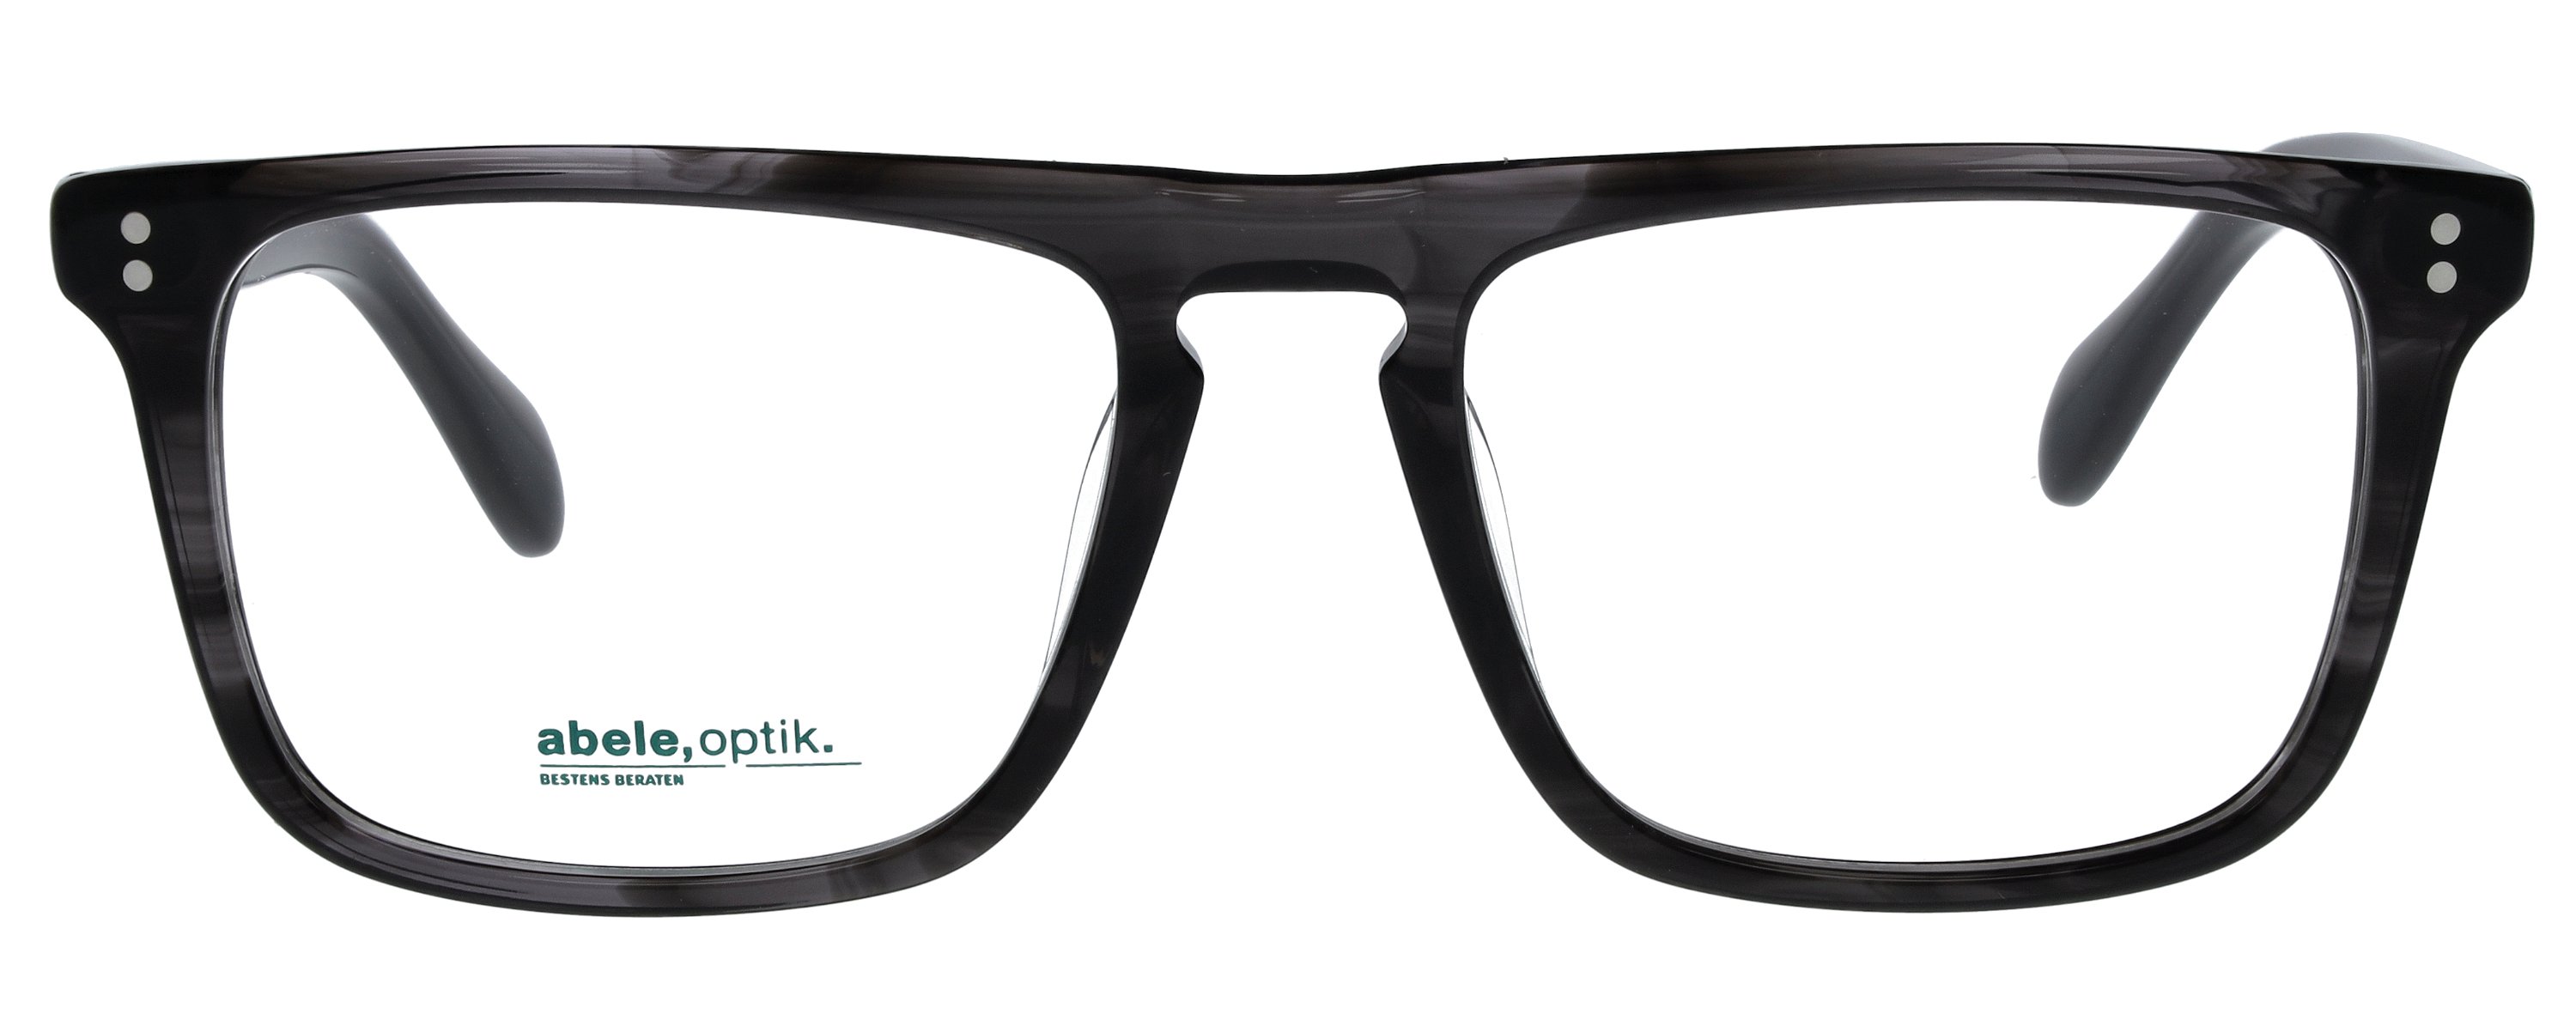 Das Bild zeigt die Korrektionsbrille 148741 von der Marke Abele Optik in schwarz-grau transparent.